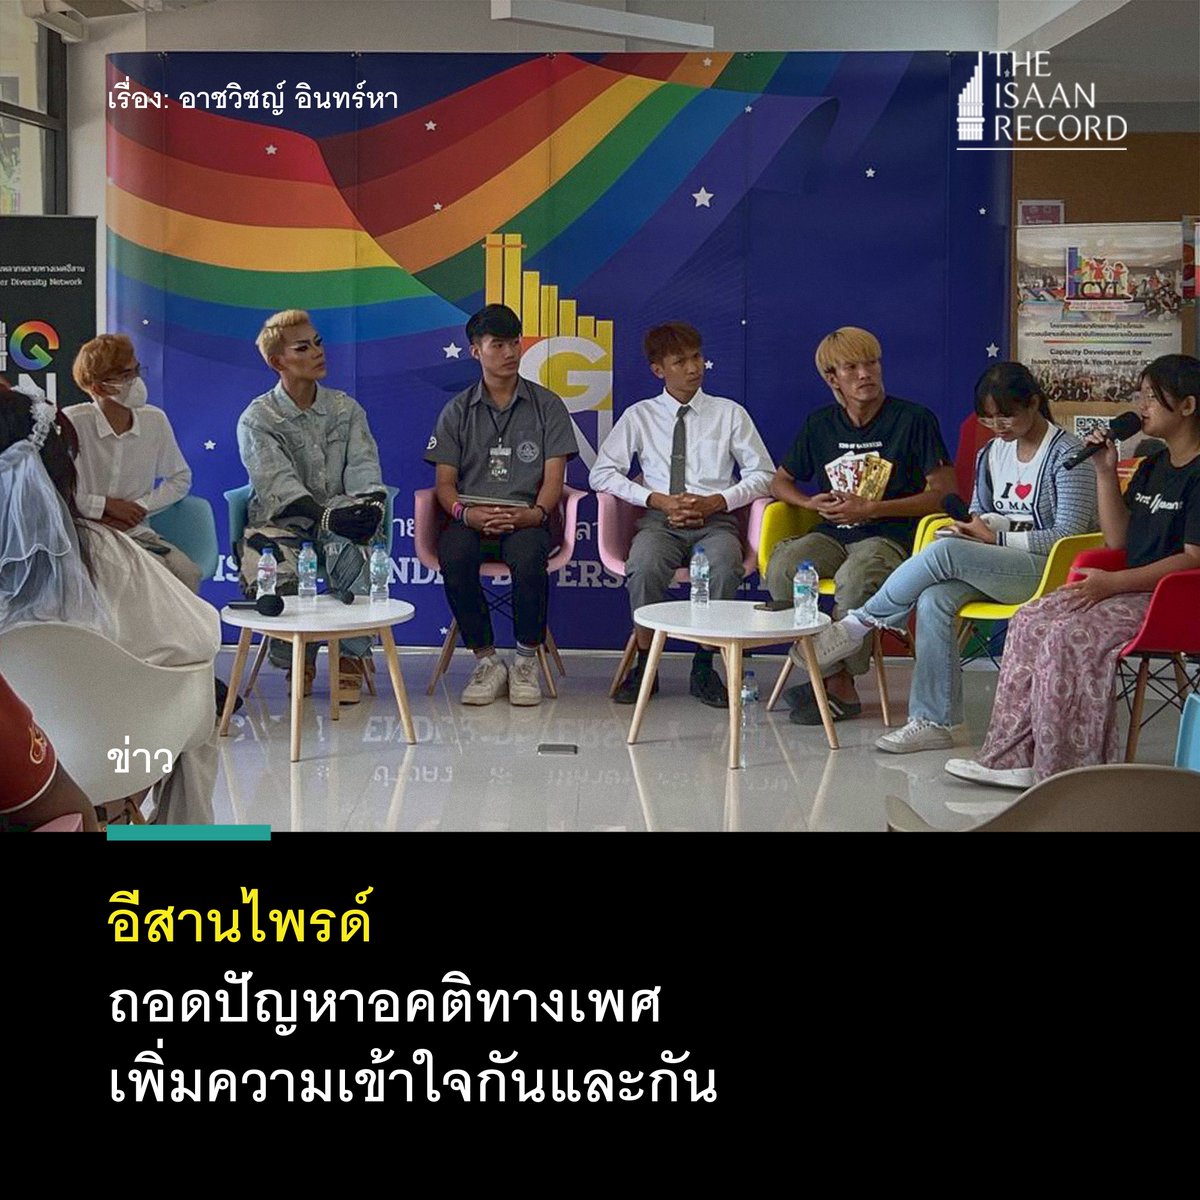 อีสานไพรด์
ถอดปัญหาอคติทางเพศ
เพิ่มความเข้าใจกันและกัน

facebook.com/photo/?fbid=67…

#Bangkokpride2023 #อีสานไพรด์ #ขอนแก่นไพรด์ #PrideMonth